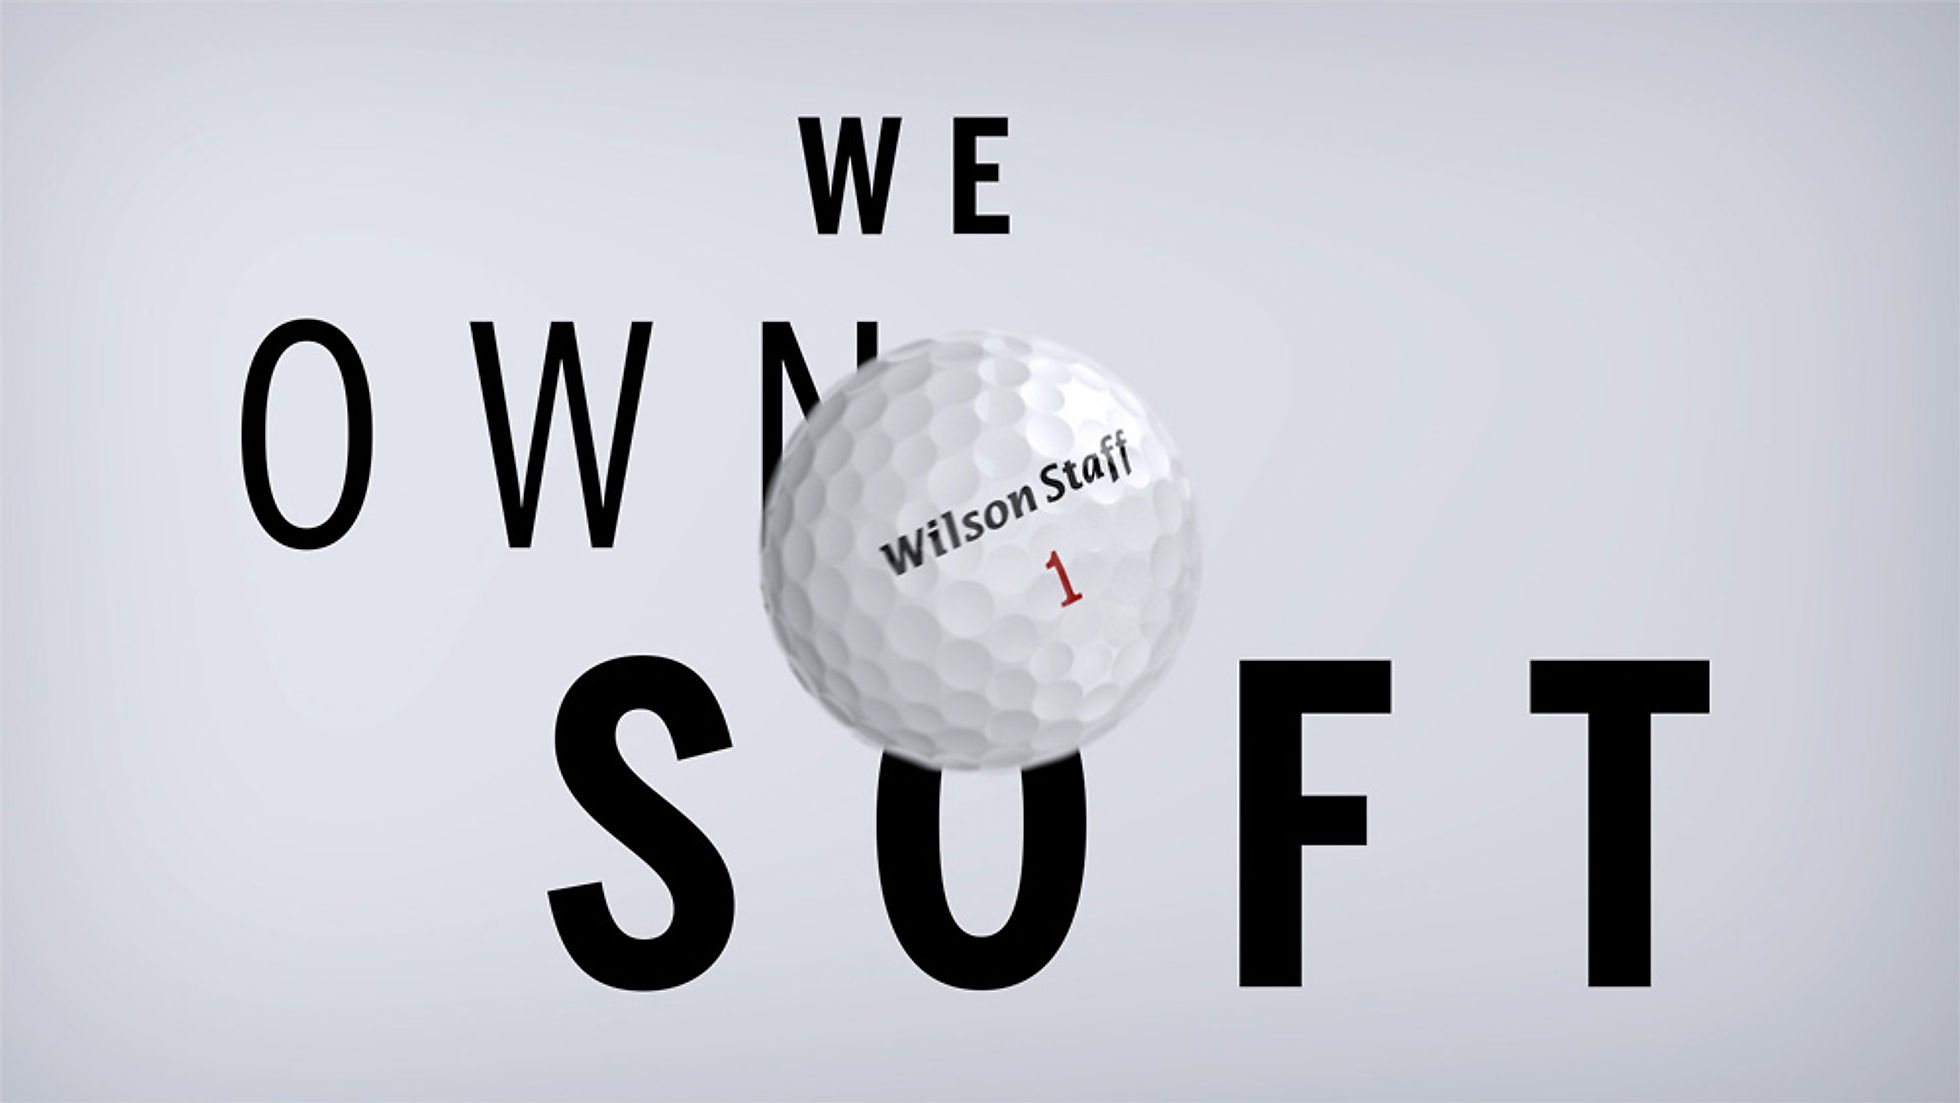 Wilson_Staff_We_Own_Soft